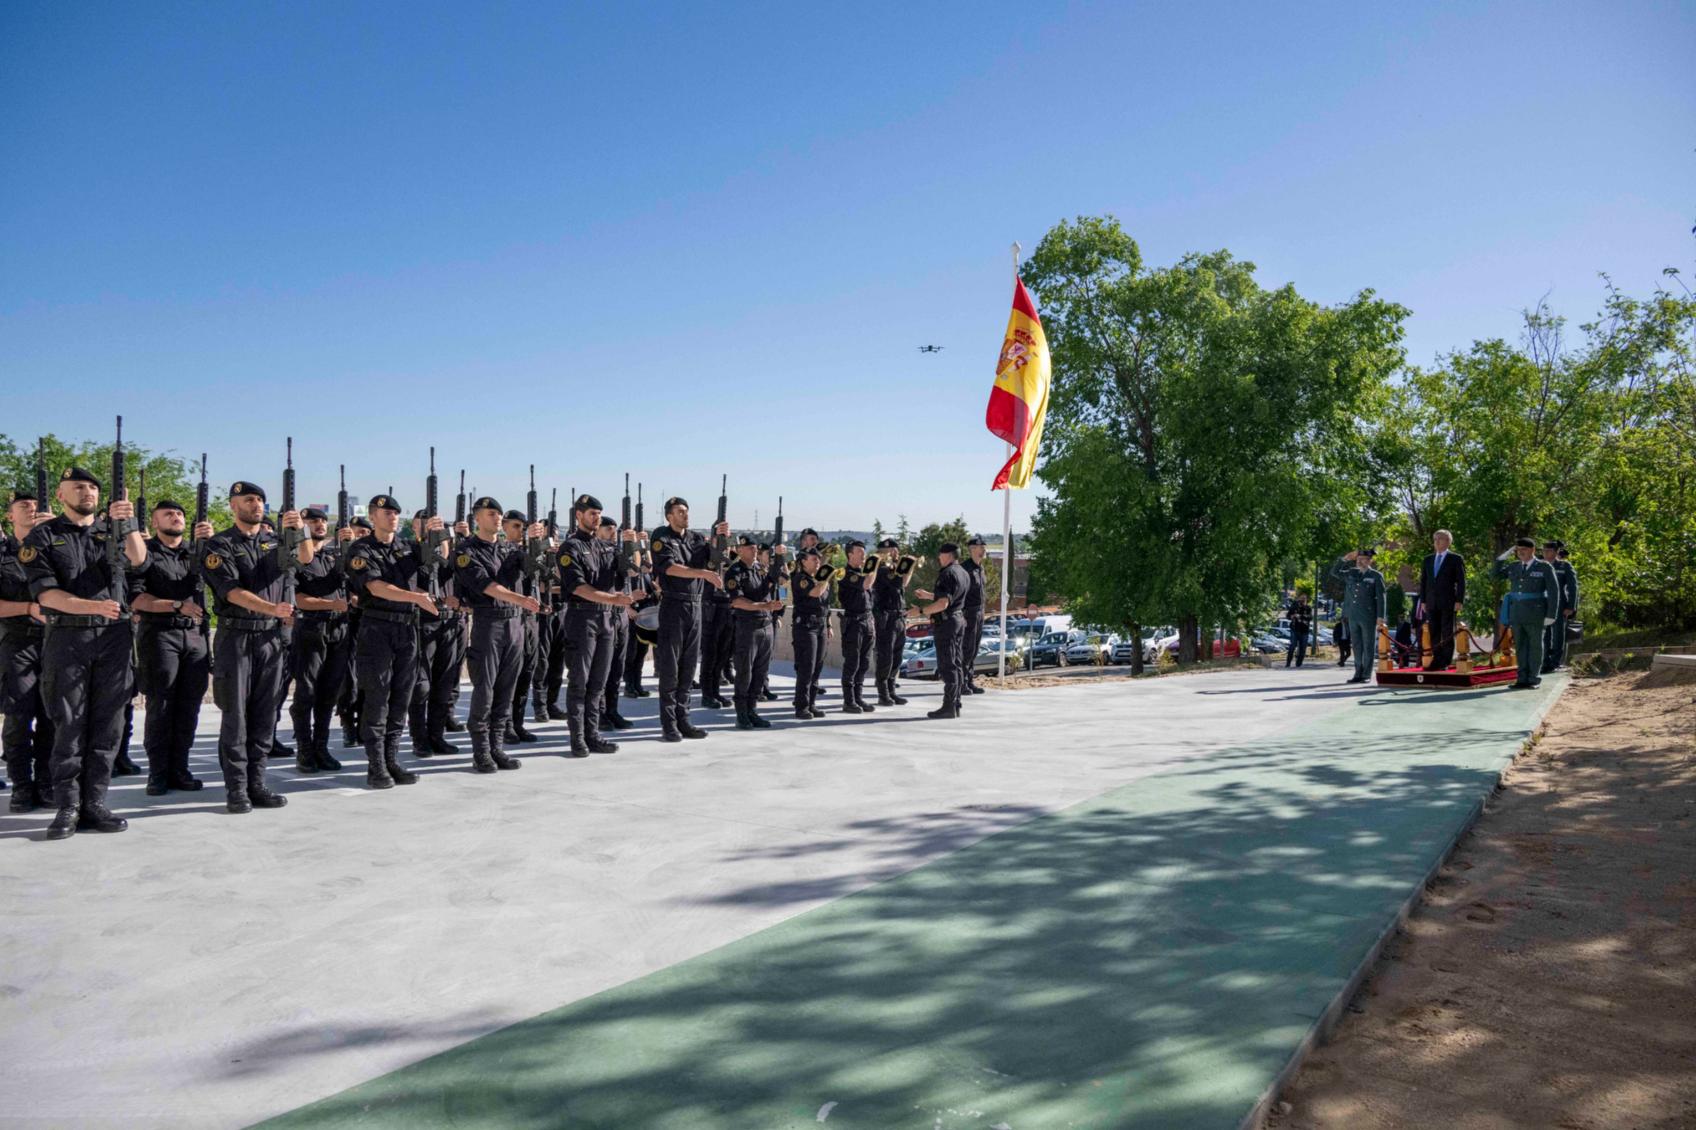 El director general de la Guardia Civil visita las nuevas instalaciones de la Agrupación de Reserva y Seguridad en Valdemoro